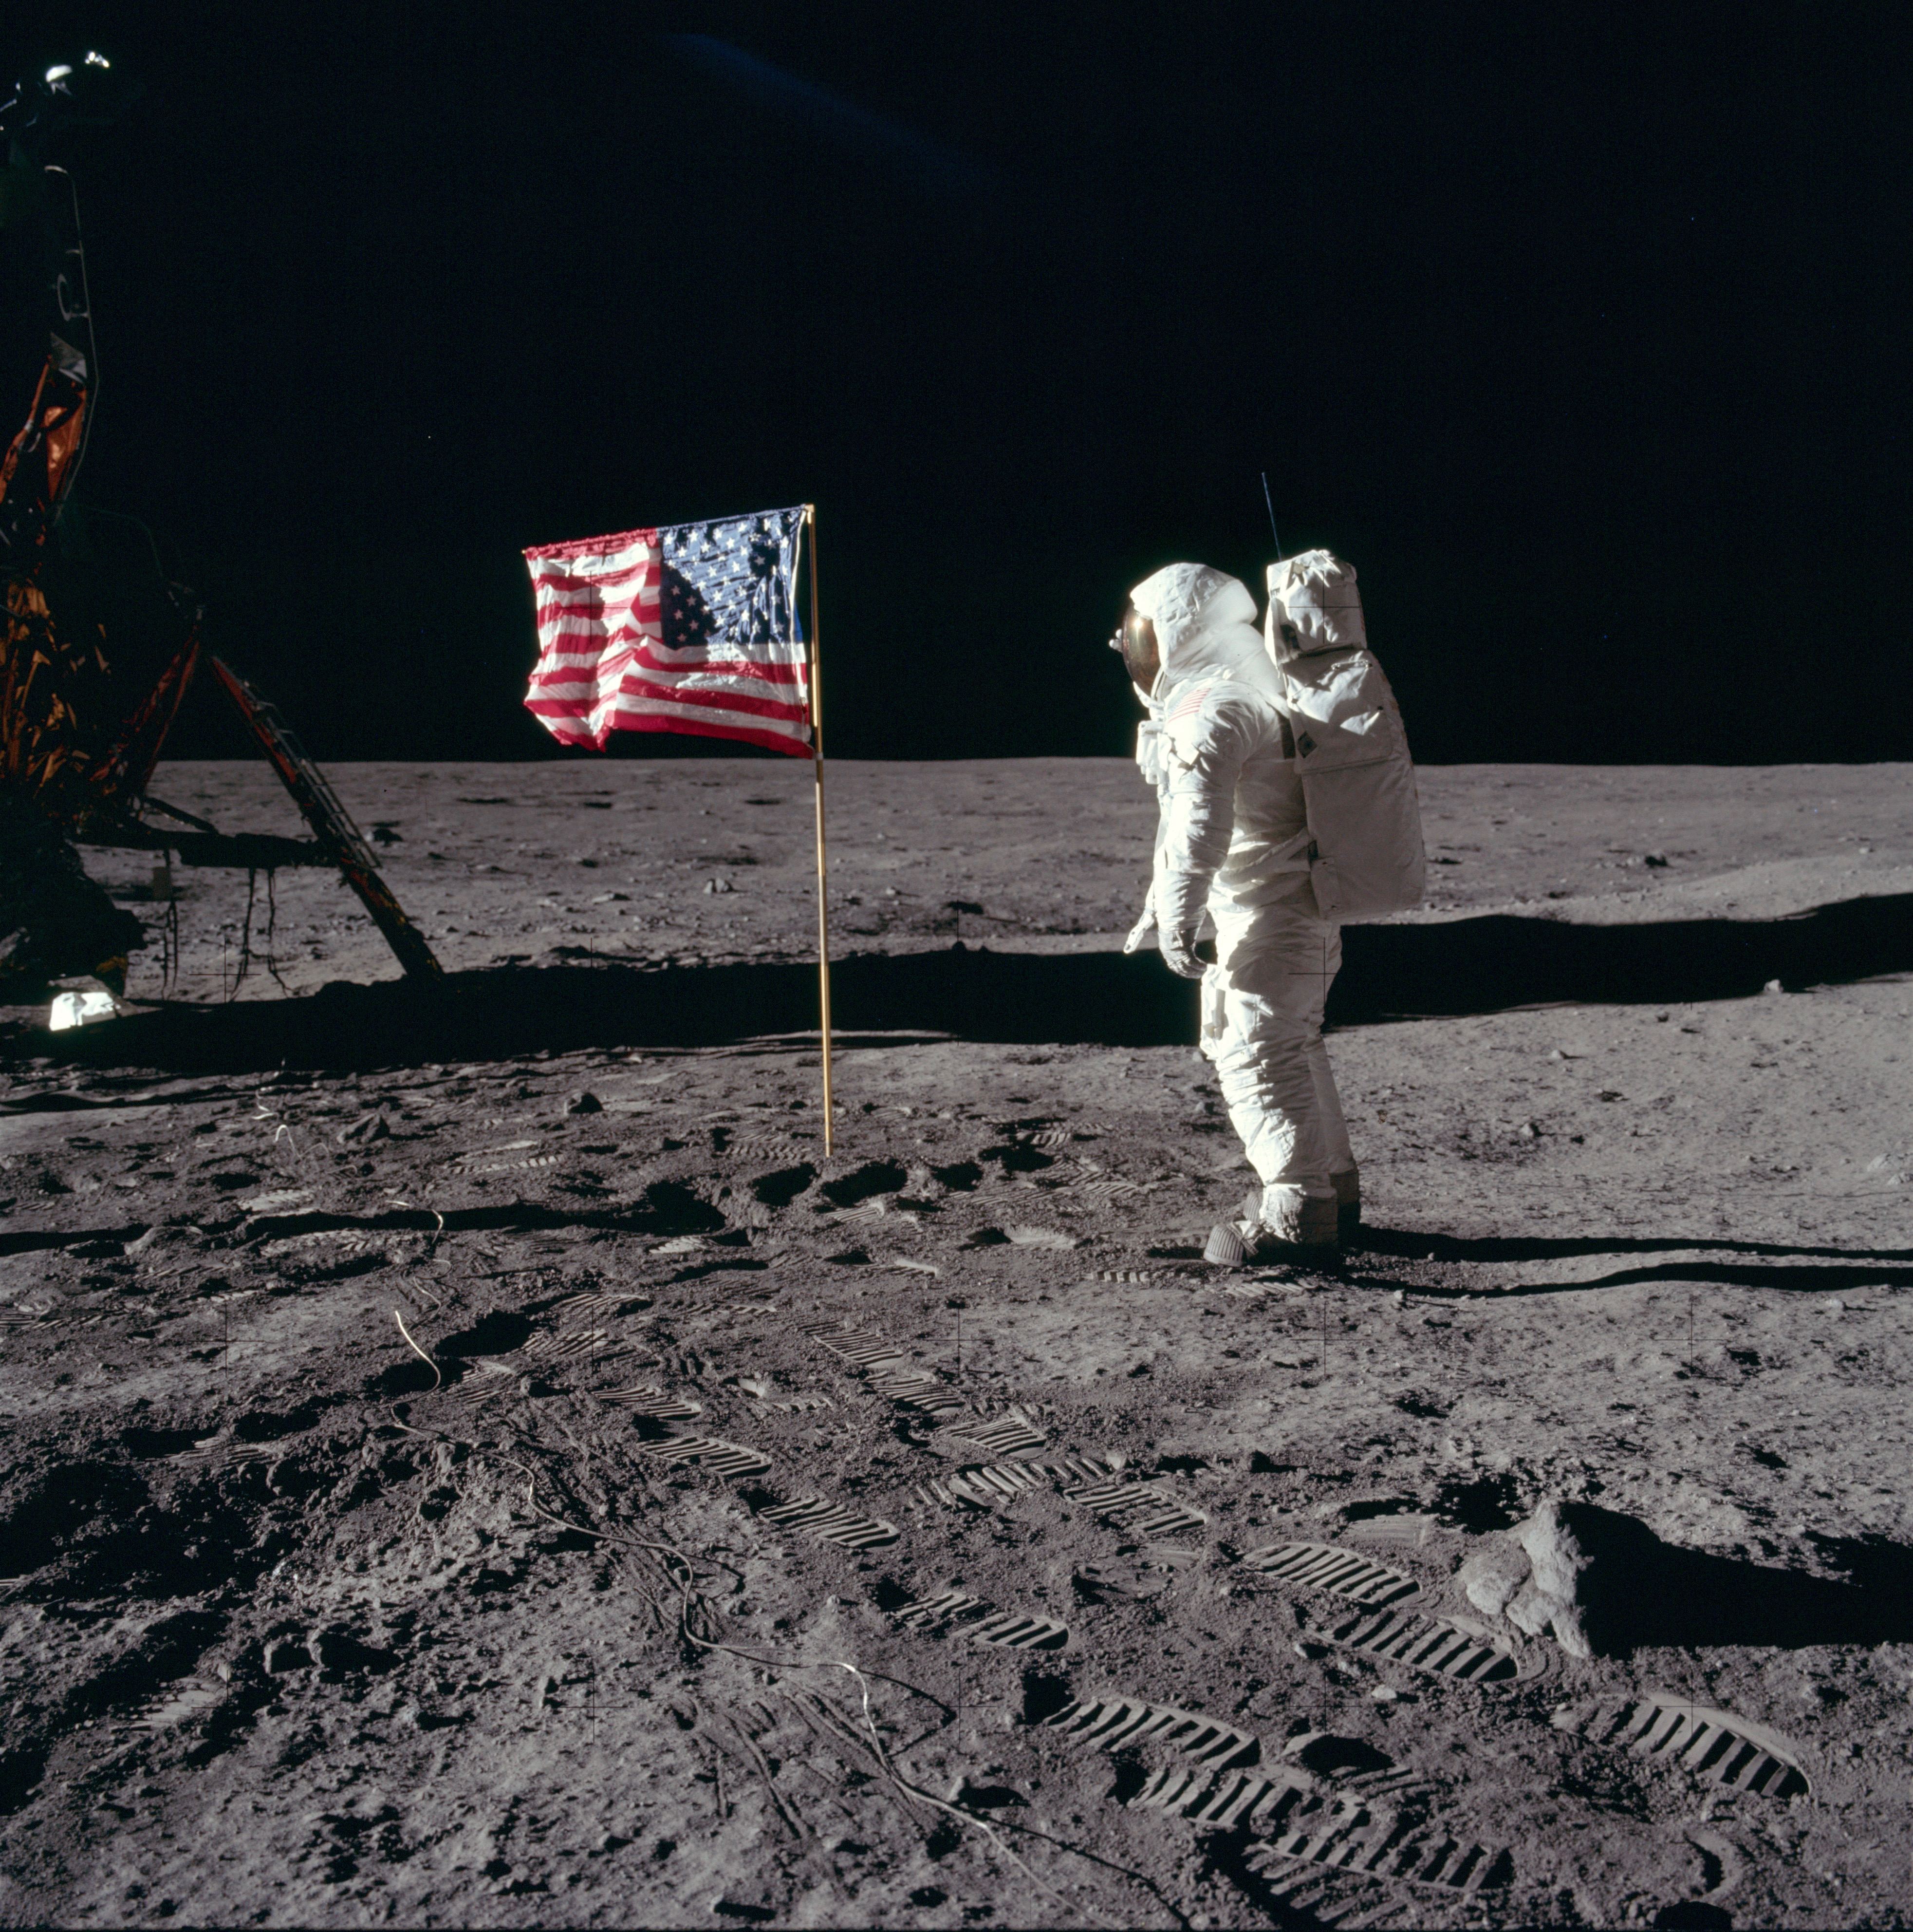 Apollo 11 moon walk